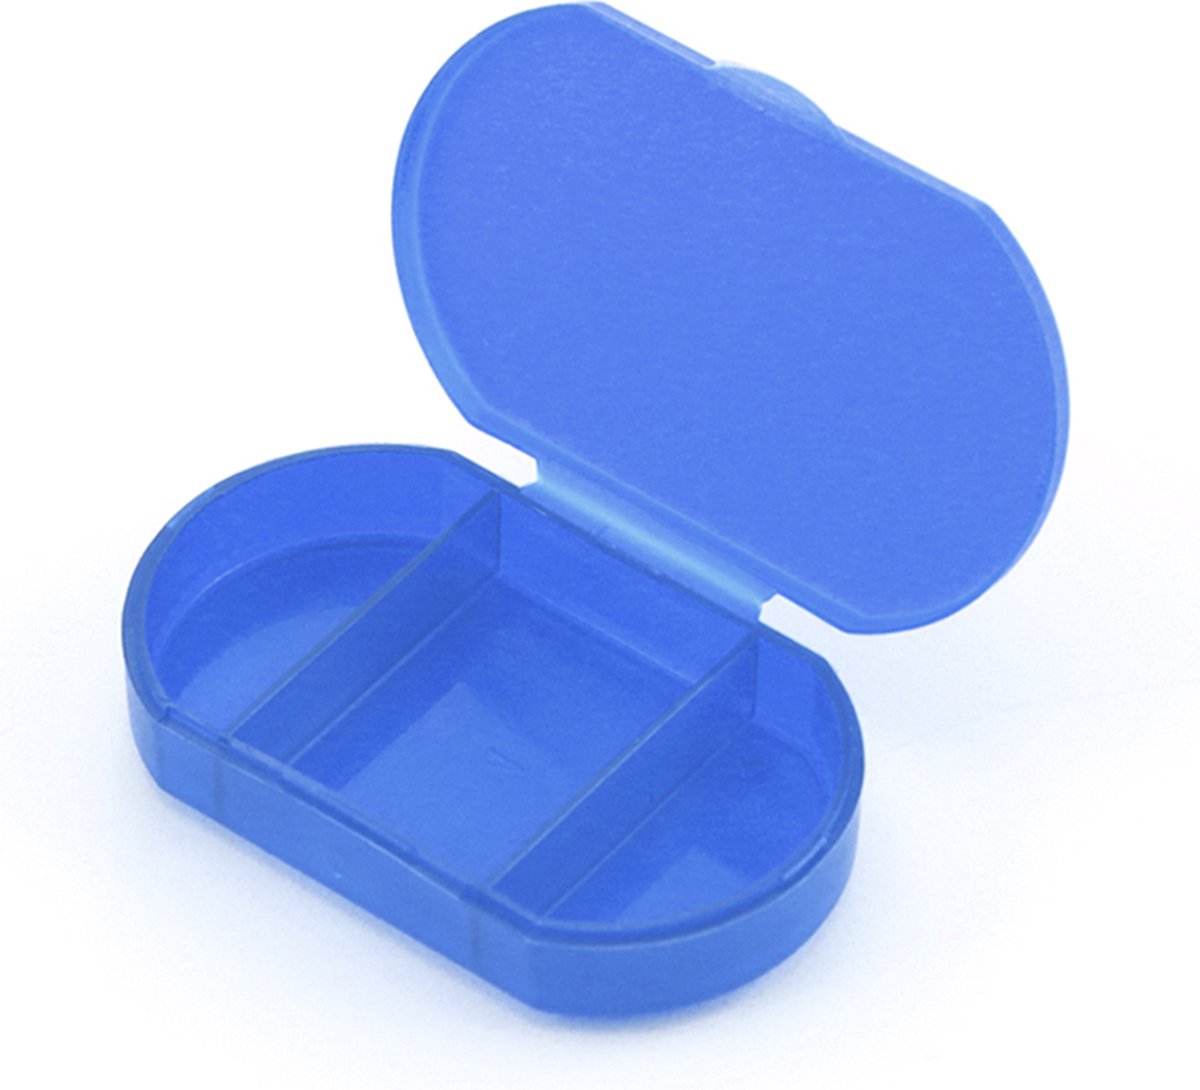 Pillendoosje - Pillendoos - Medicijndoosje - Klein - 3 vakken - blauw